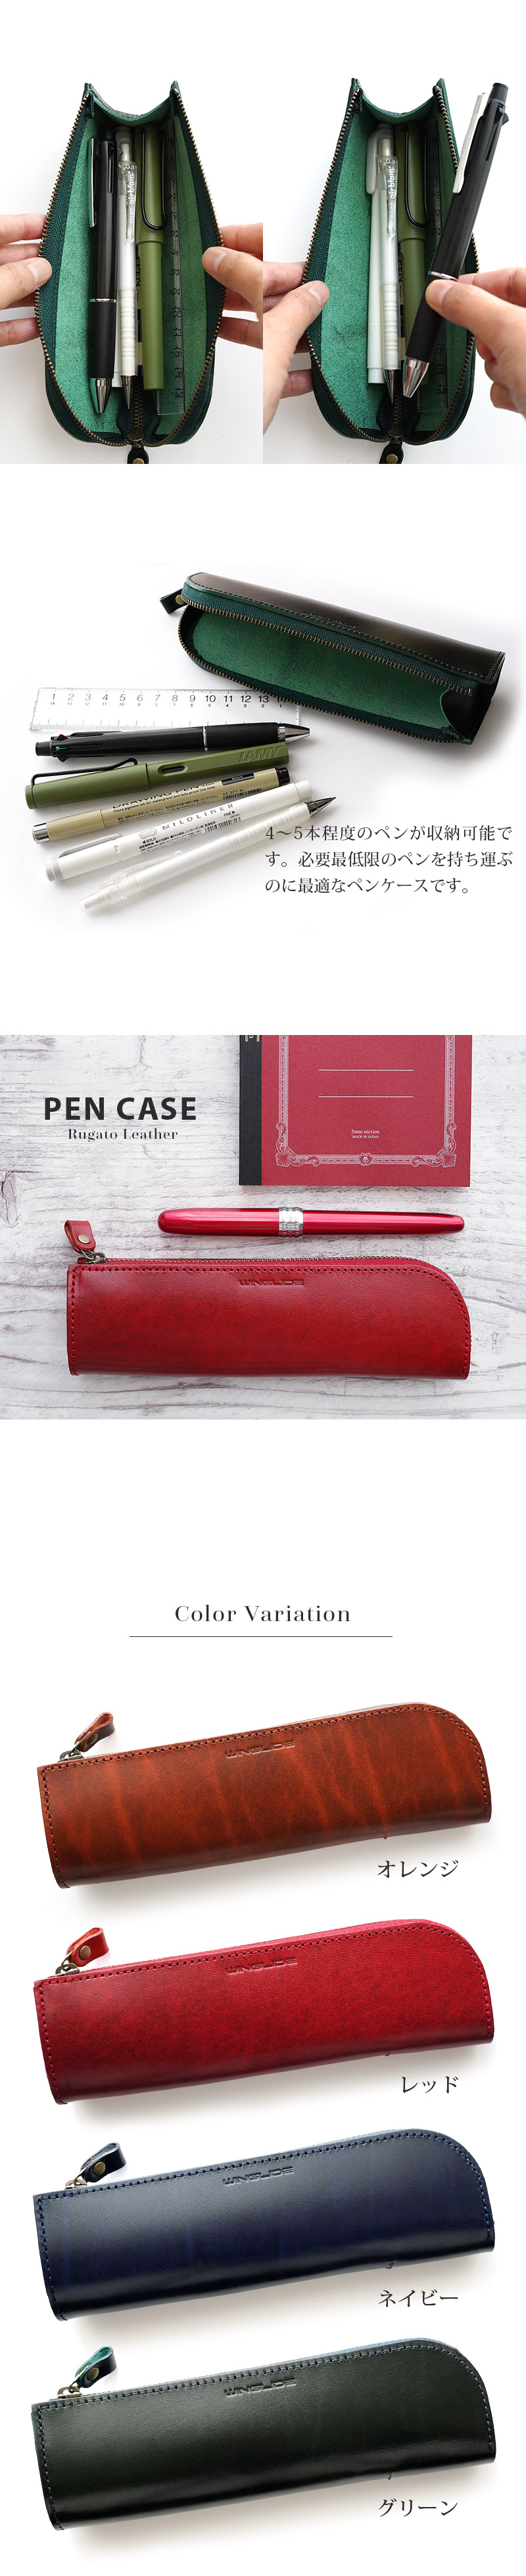 シンプルな造りのペンケースです。スリムな形状なので持ち運びやすく、バッグの中でも邪魔になりません。